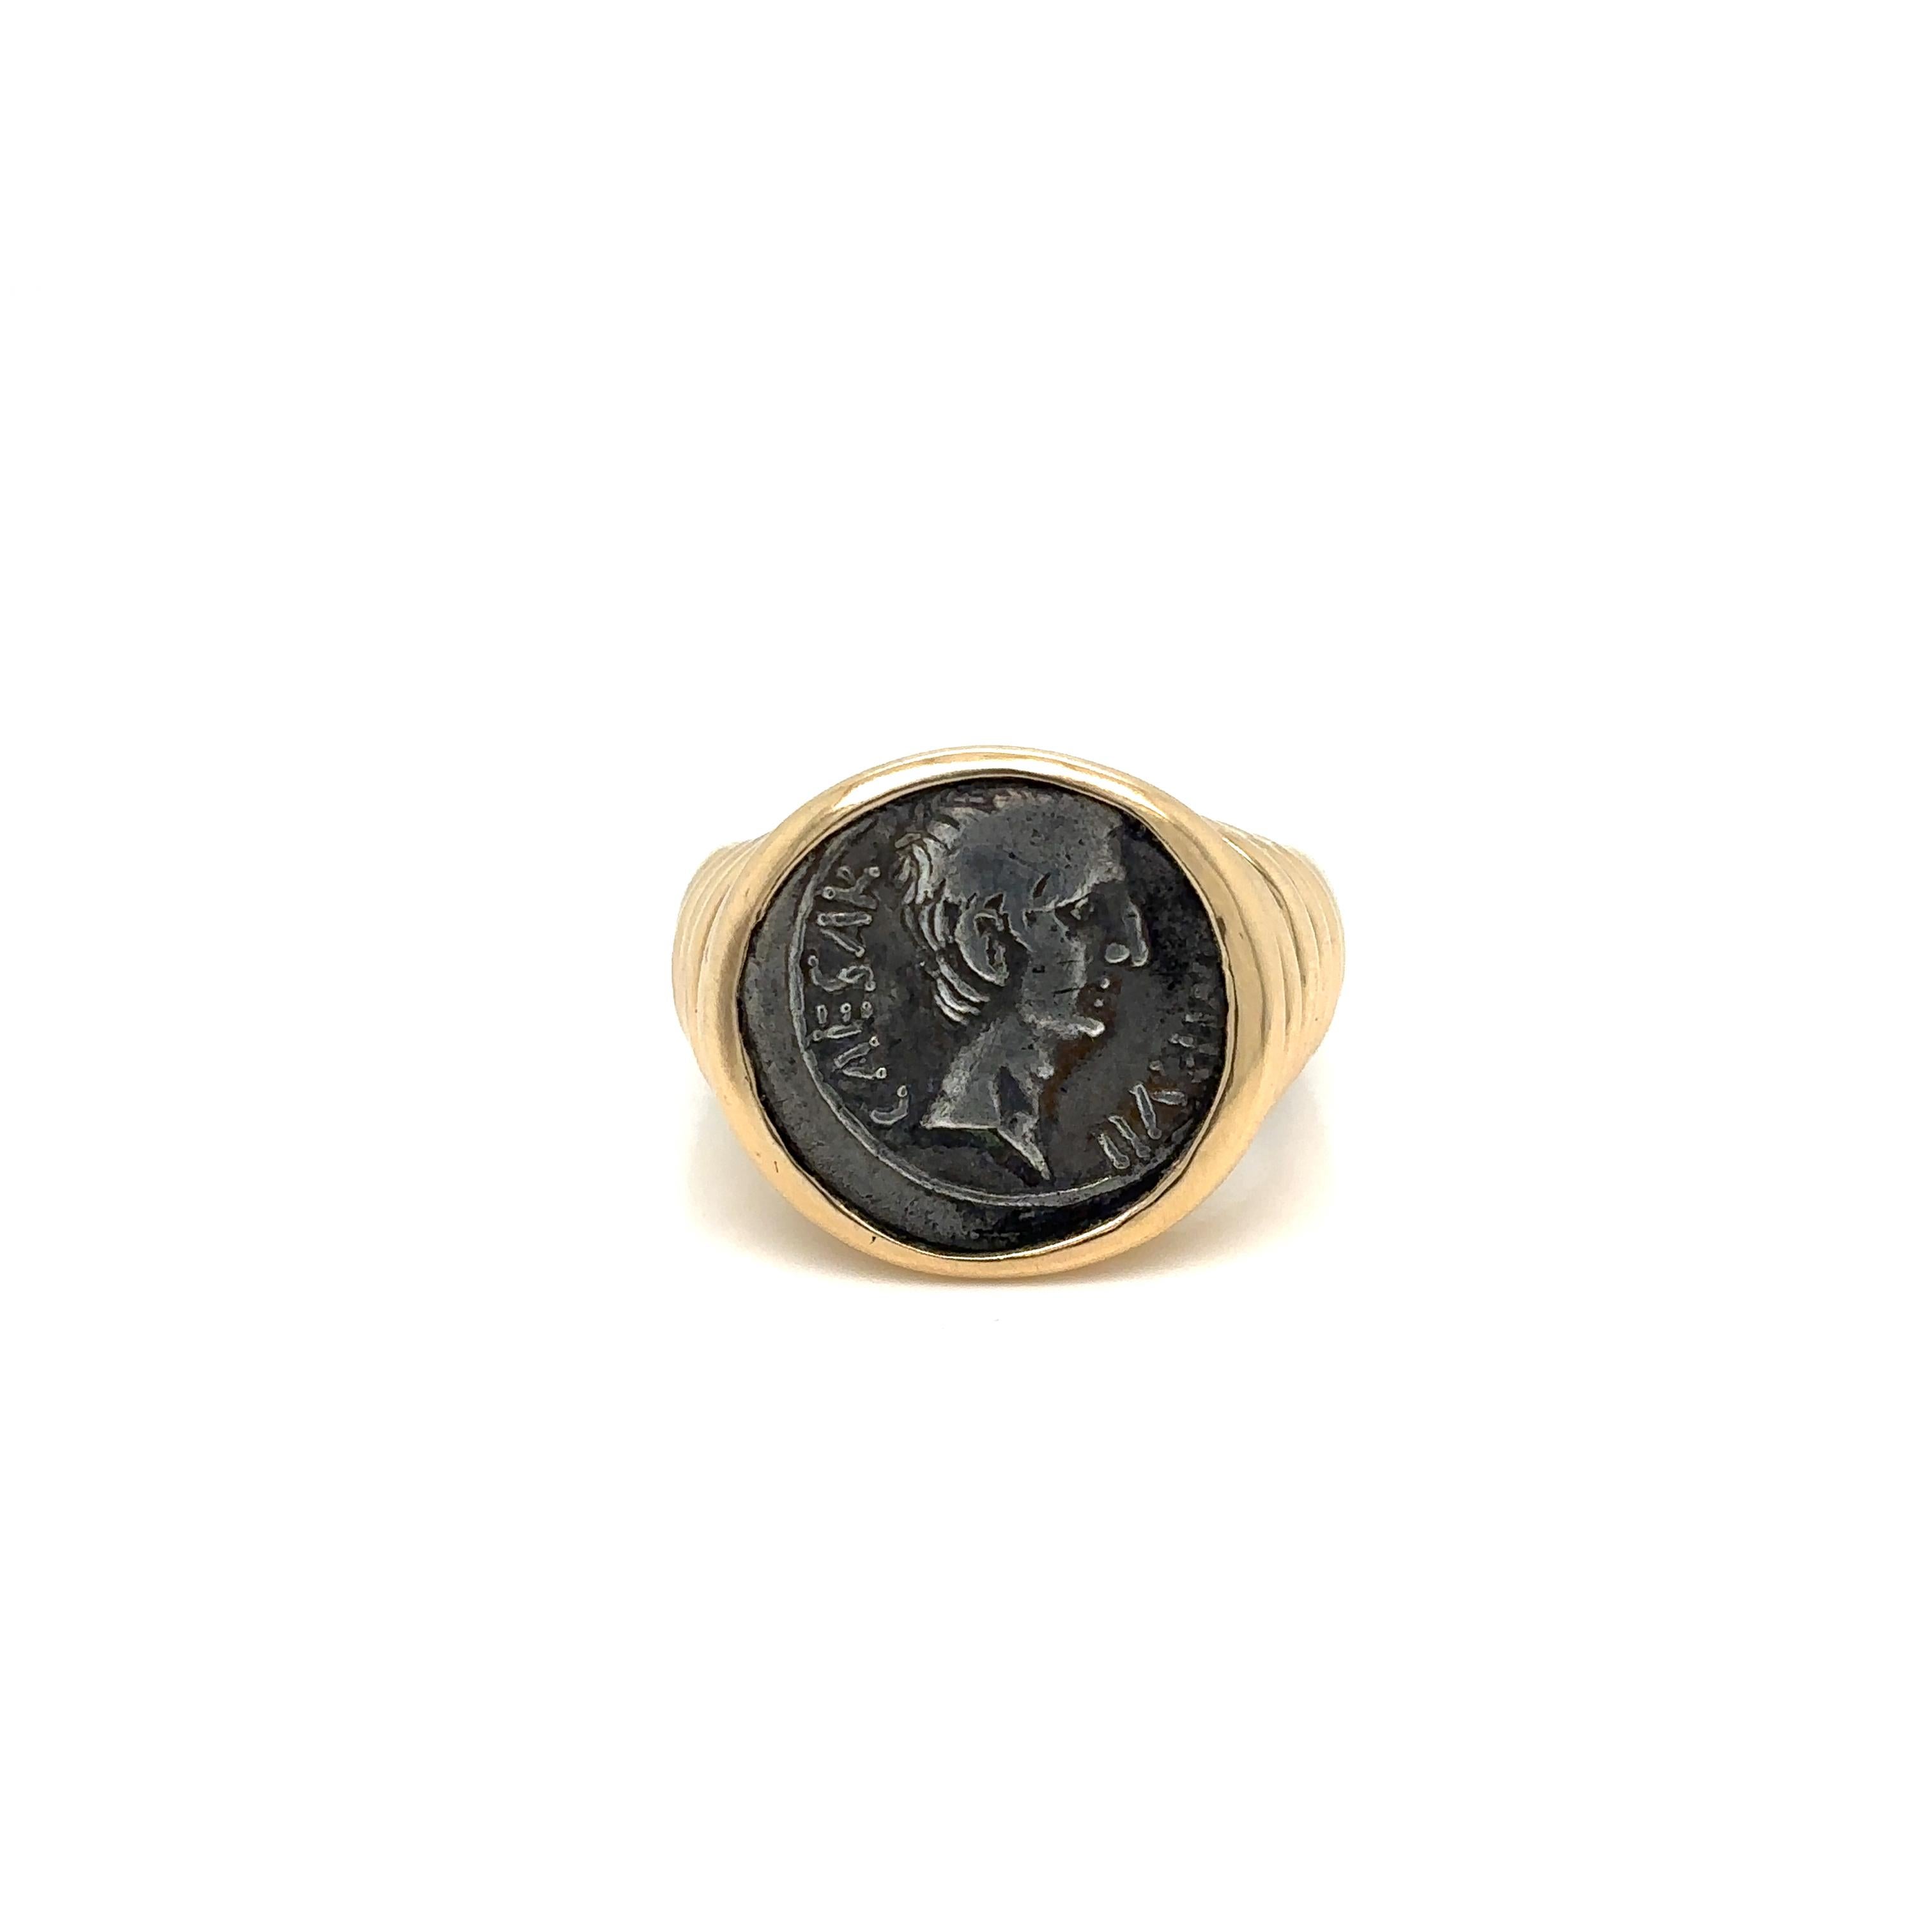 Bague Bulgari en or 18 carats de la Collection Monet, ornée d'une ancienne pièce d'argent Augustus Quinarius. Montrant à Cesar à quel point une pièce de monnaie vieille de 2 000 ans peut être séduisante lorsqu'elle est associée à une monture